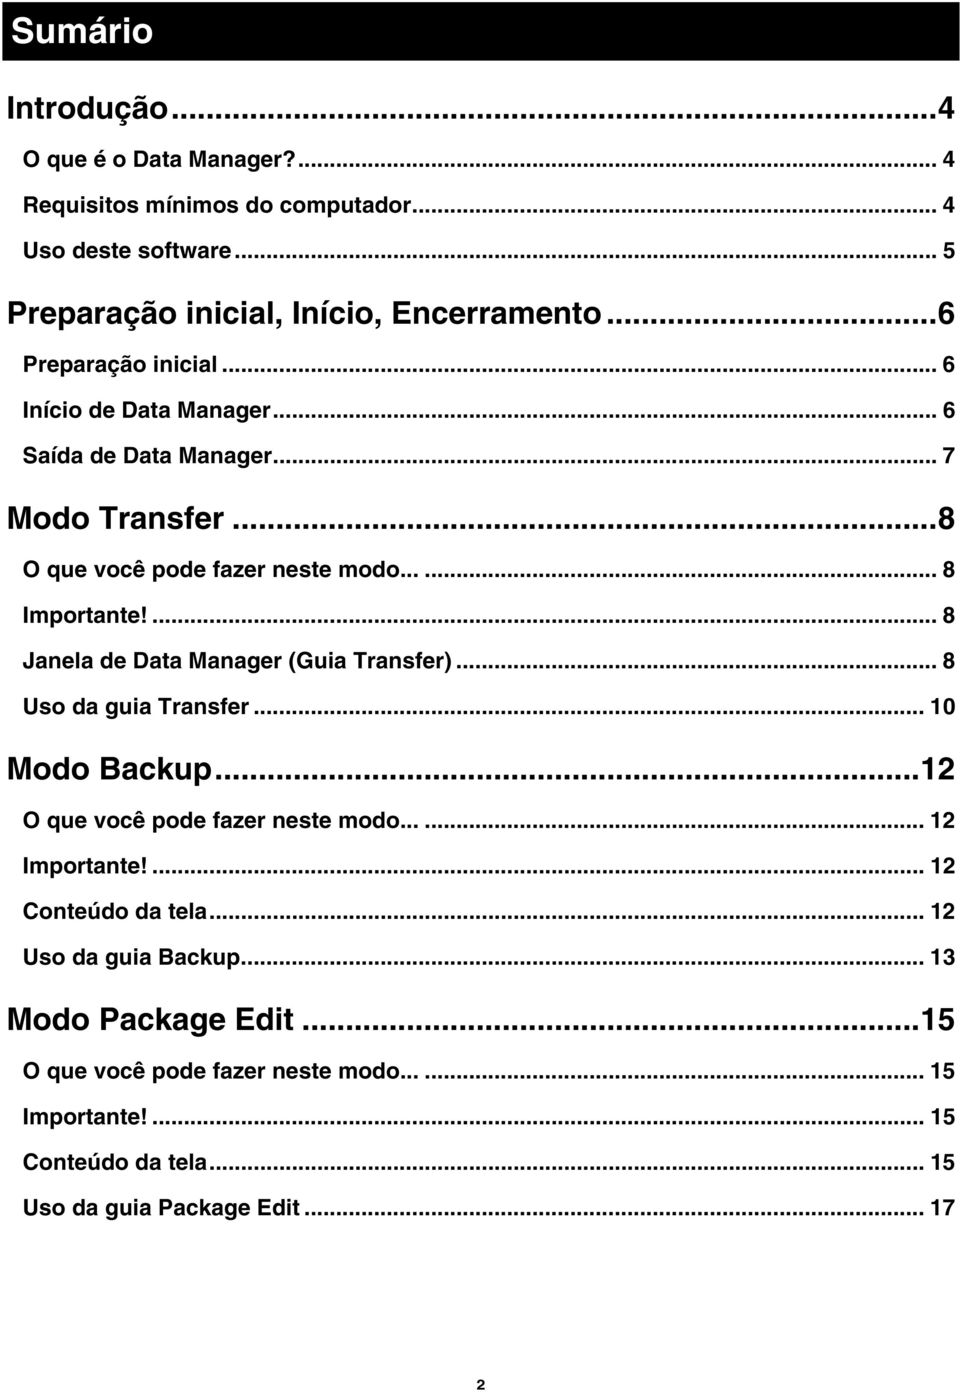 ... 8 Janela de Data Manager (Guia Transfer)... 8 Uso da guia Transfer... 10 Modo Backup...12 O que você pode fazer neste modo...... 12 Importante!